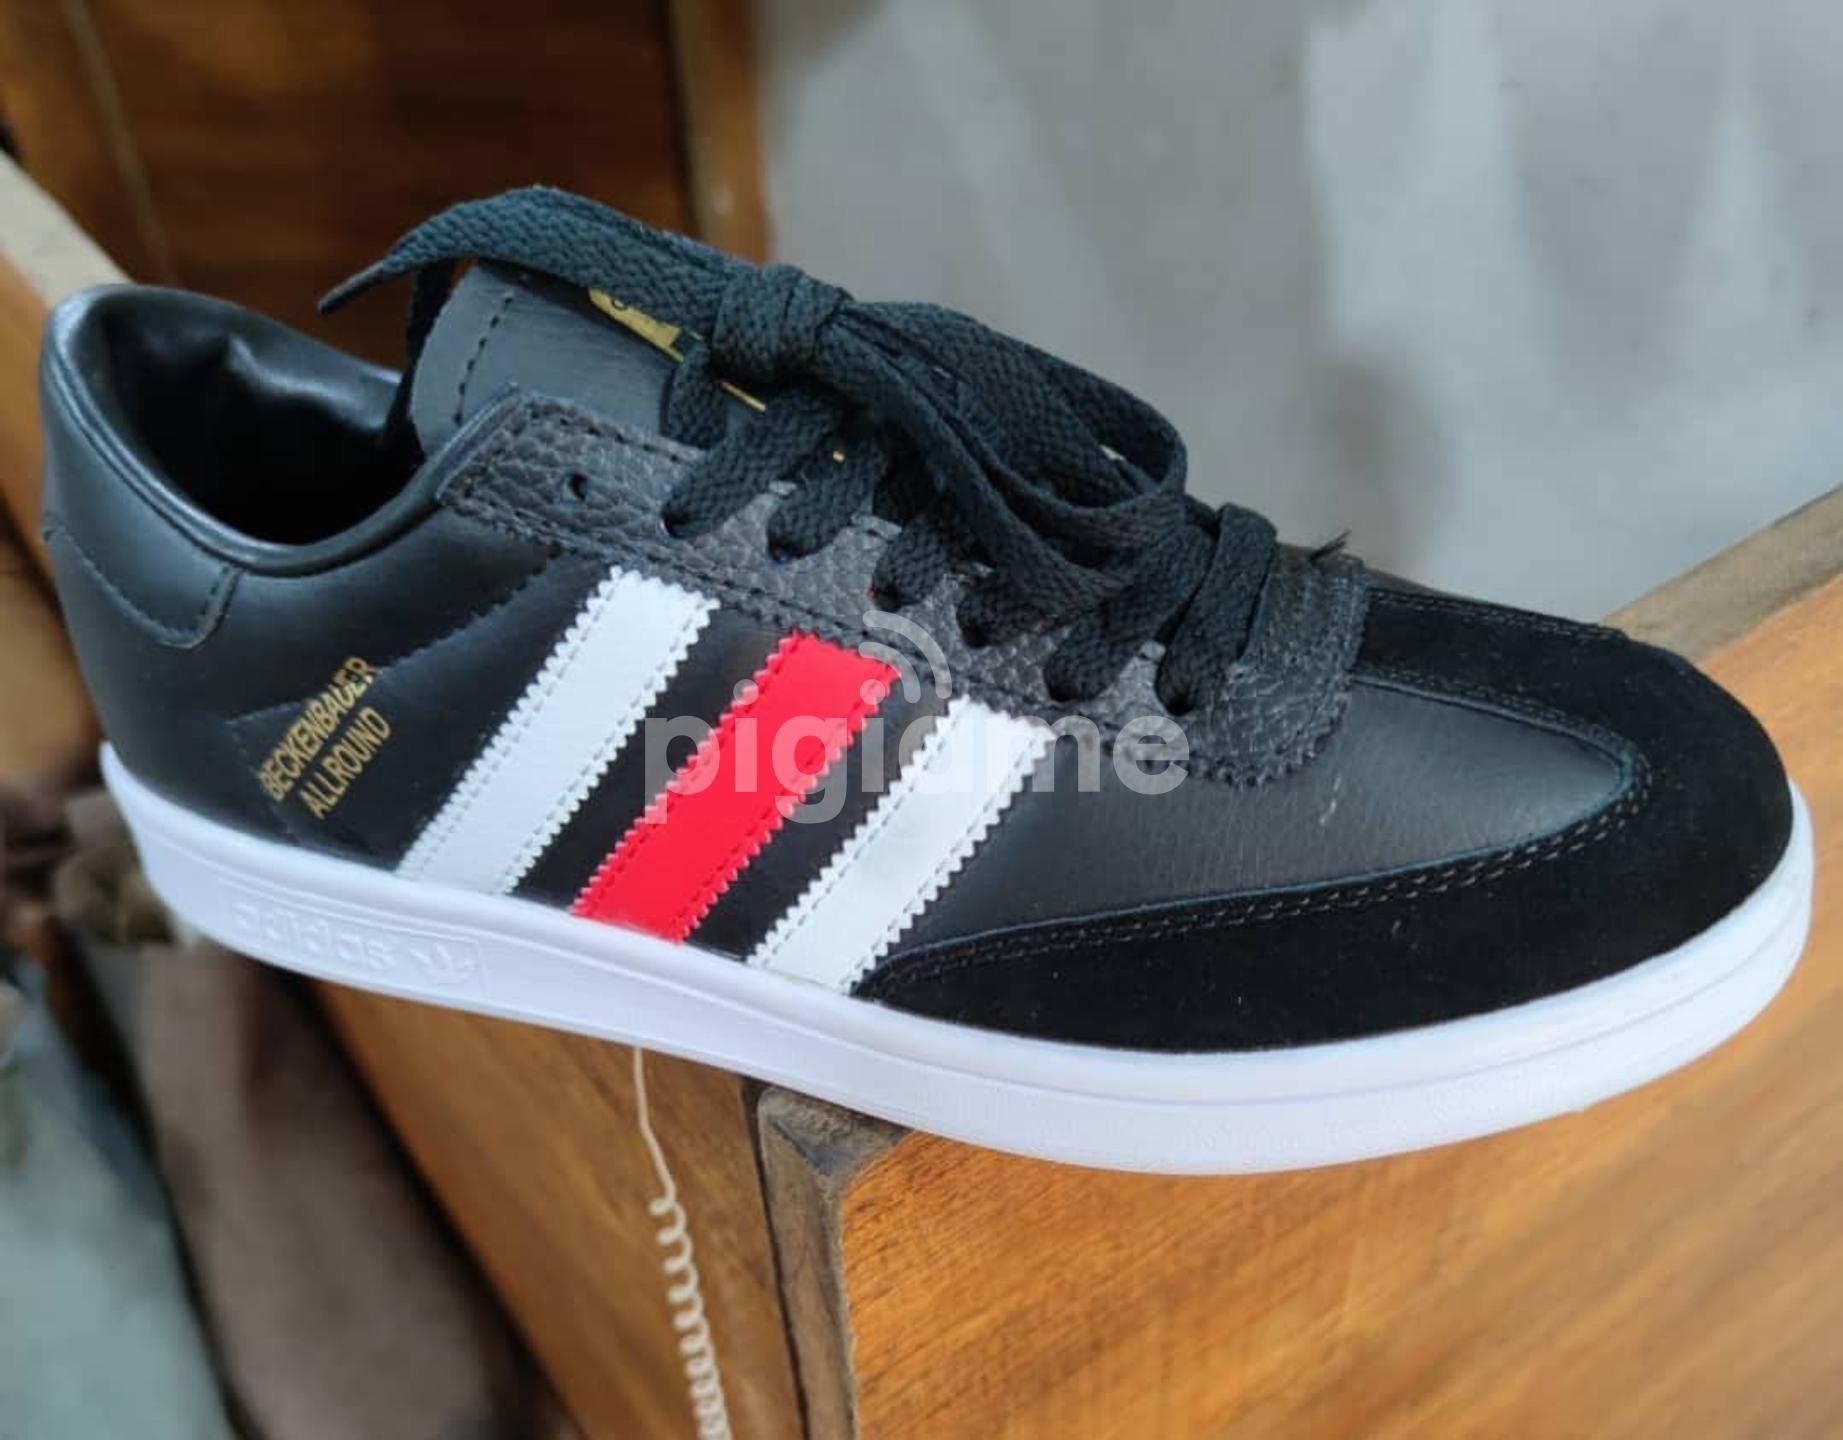 Adidas Allround Black/ Red/ White Sneakers in Nairobi CBD | PigiaMe